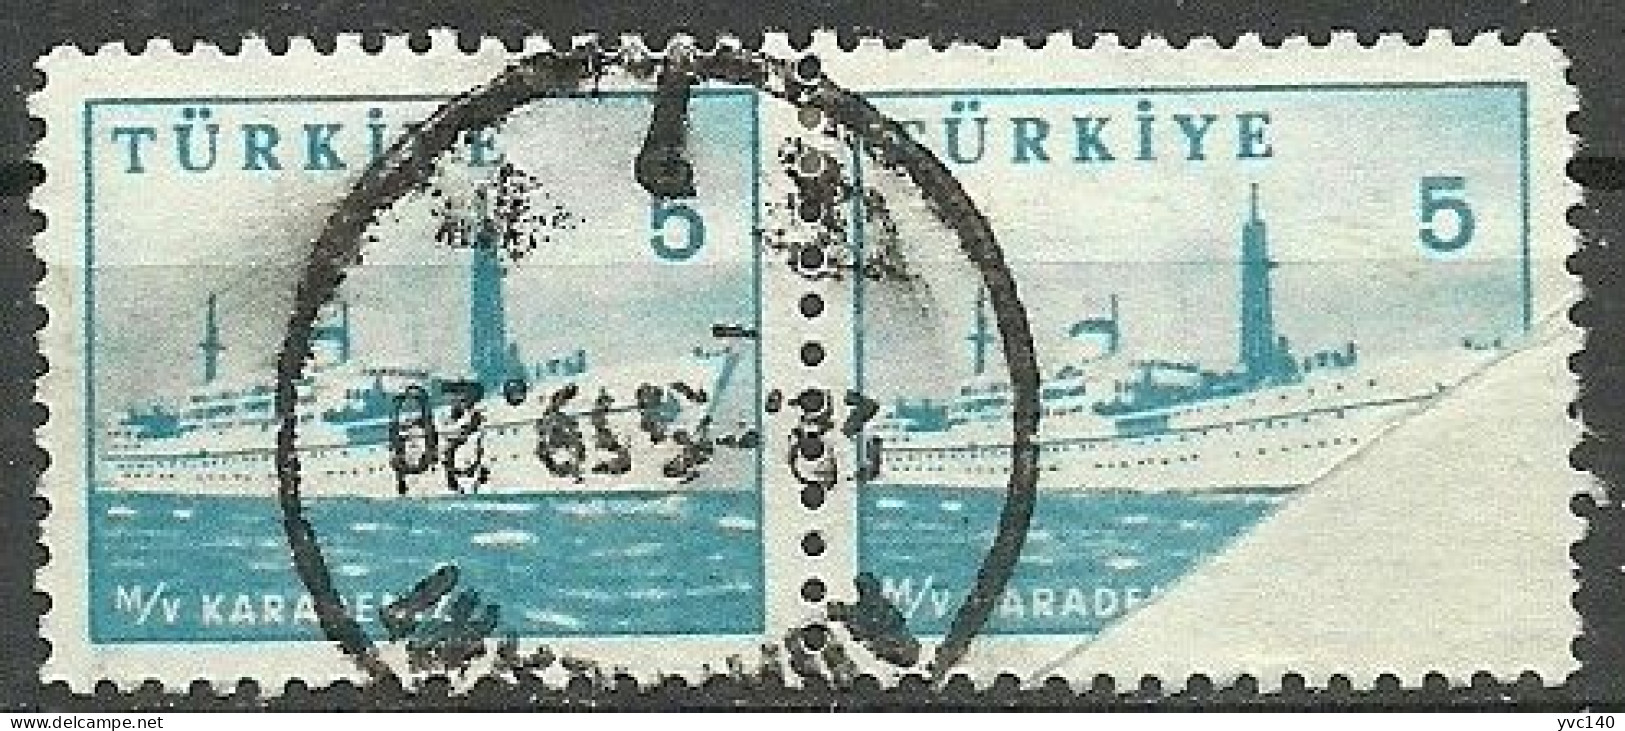 Turkey; 1959 Pictorial Postage Stamp 5 K. "Folding ERROR" - Gebruikt